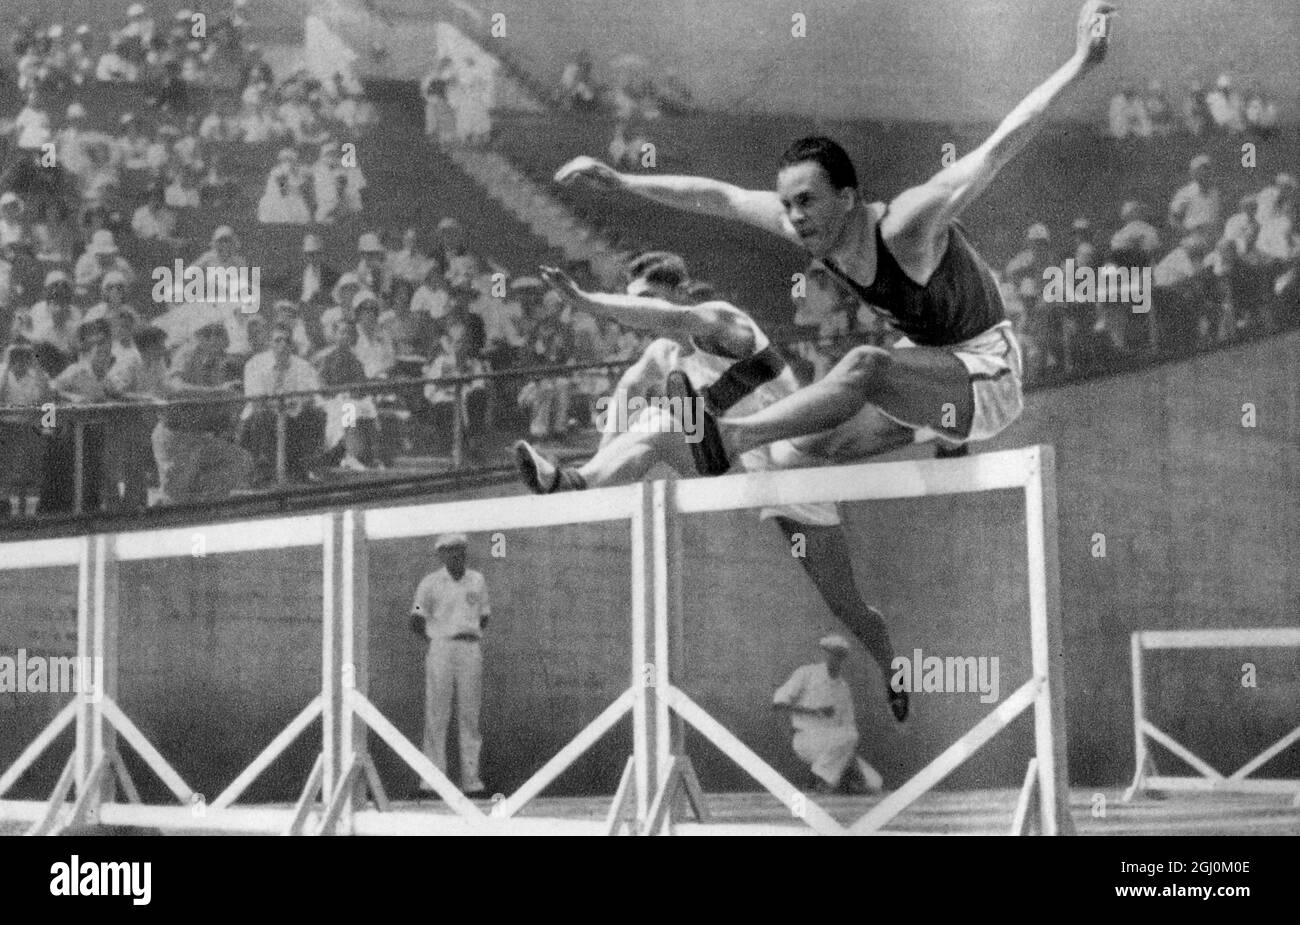 1932 Giochi Olimpici, Los Angeles, USA, akilles Järvinen in questo evento 110 metri ostacoli Foto Stock